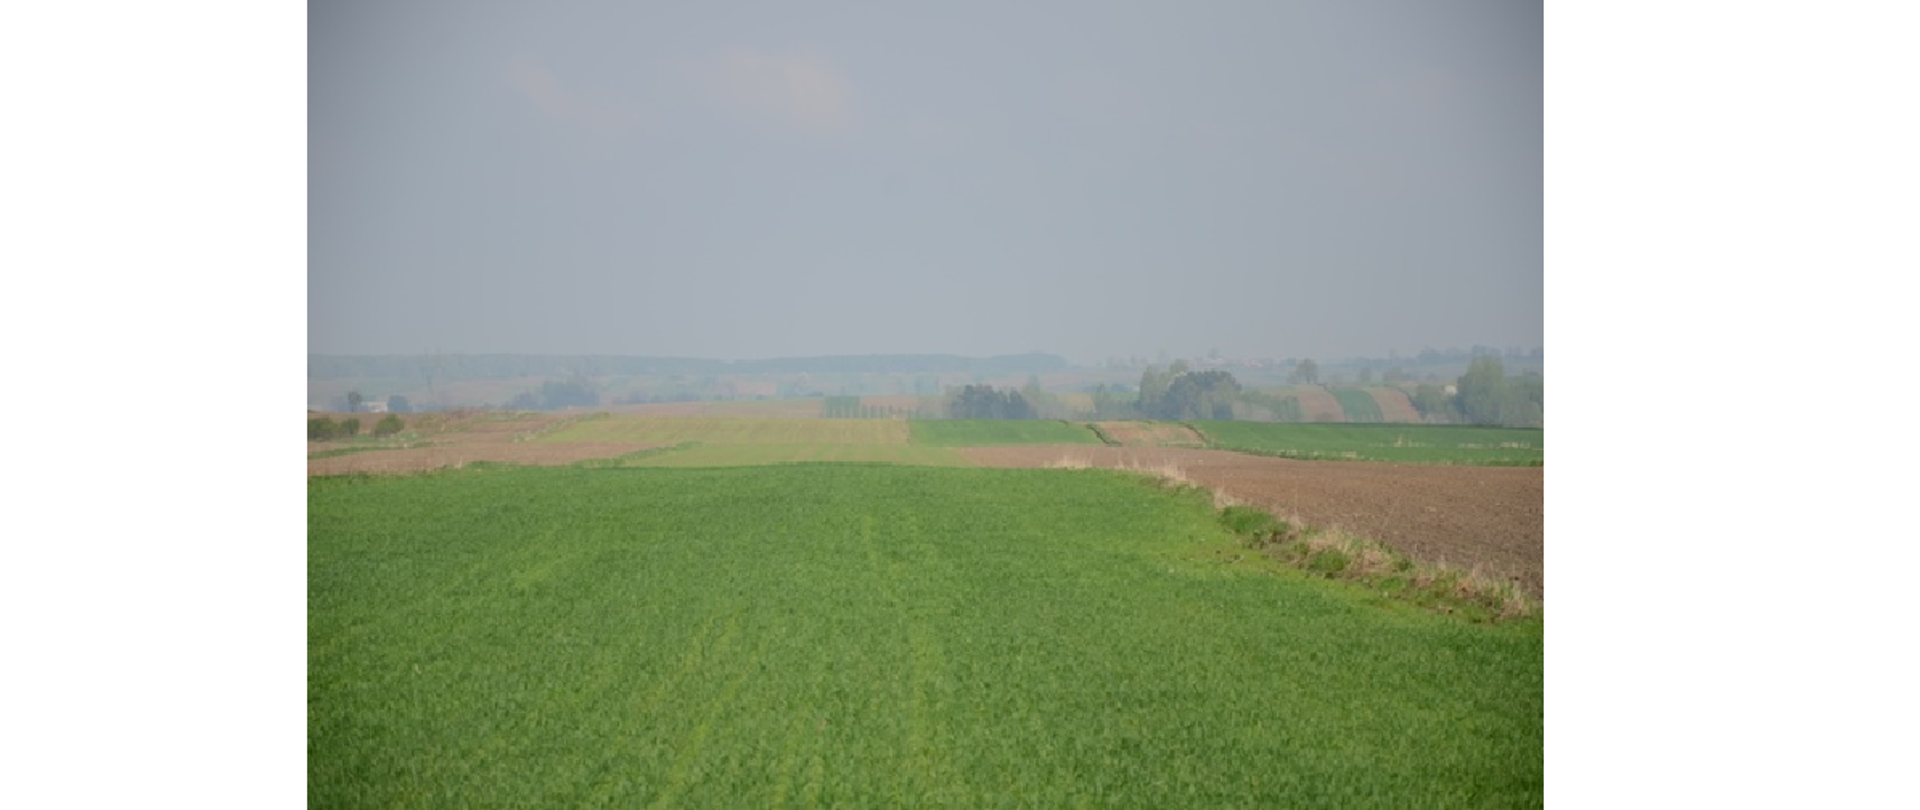 Zdjęcie przedstawia pola, po prawej widzimy część zaoranego pola lecz większa część przedstawia terenu na którym już kiełkuje jakiś rodzaju zboże. W tle widać lekko zachmurzone niebo.